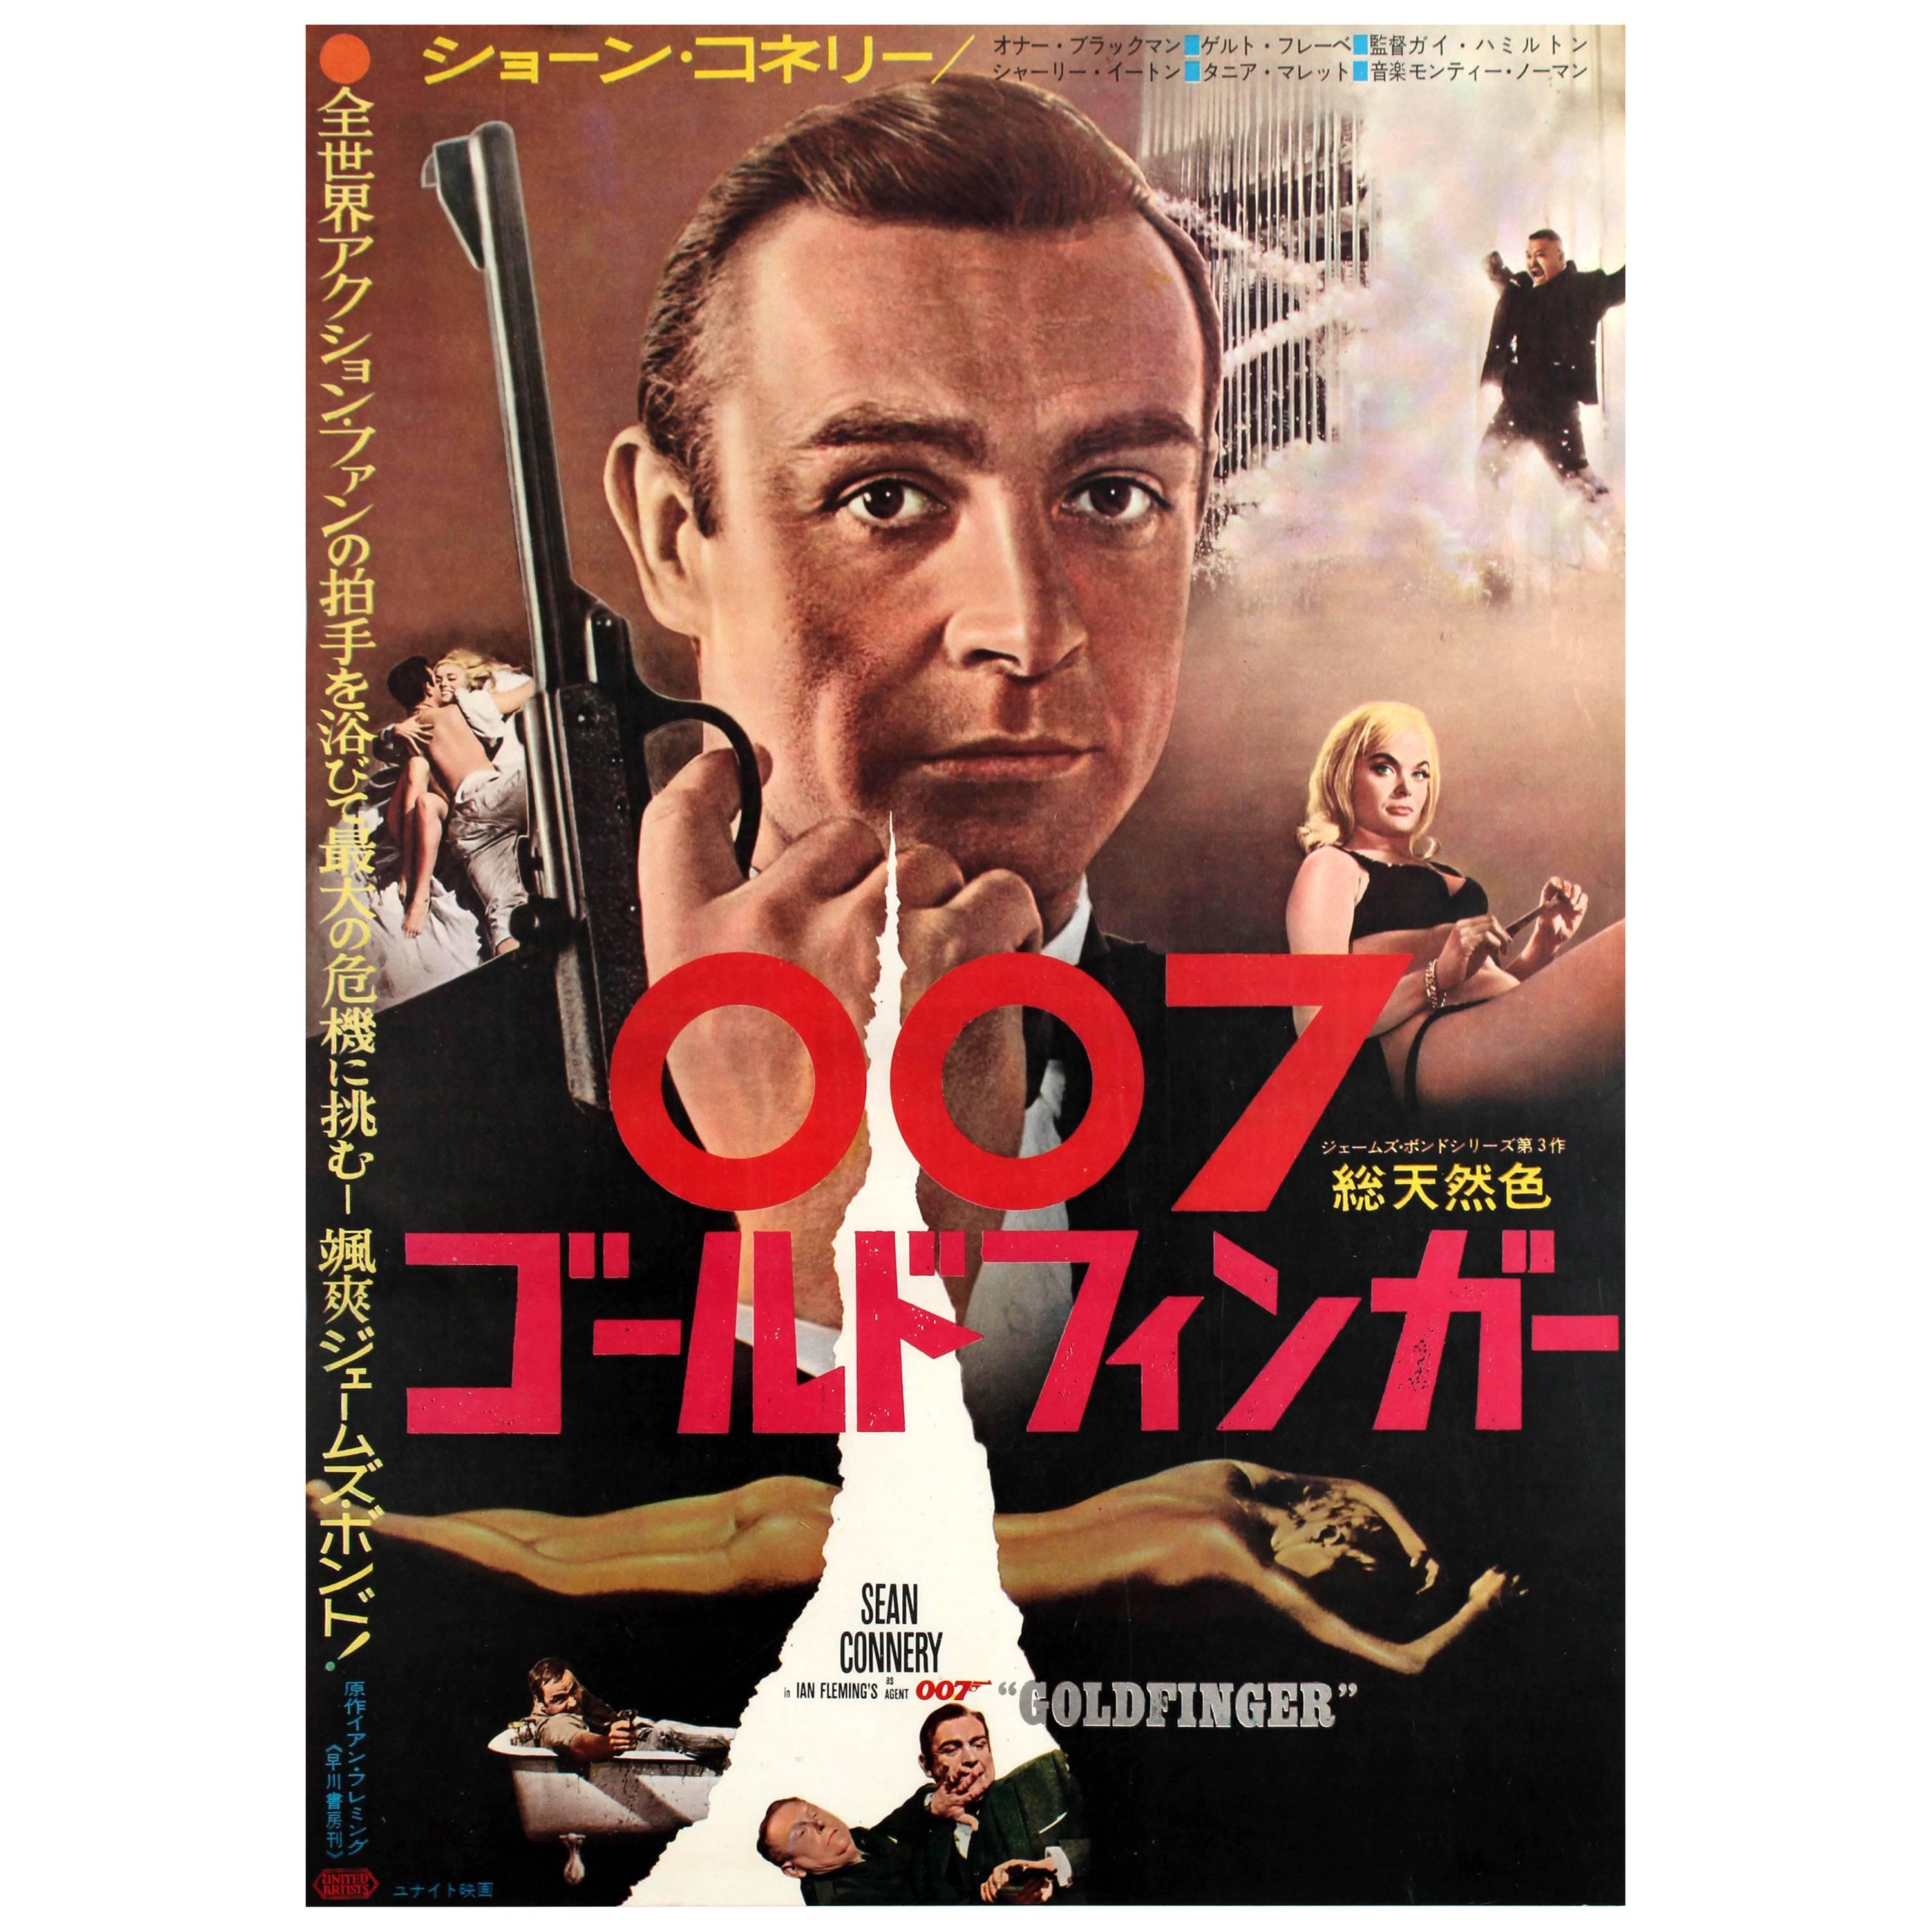 Original Vintage Japanese Release James Bond Movie Poster for 007, Goldfinger